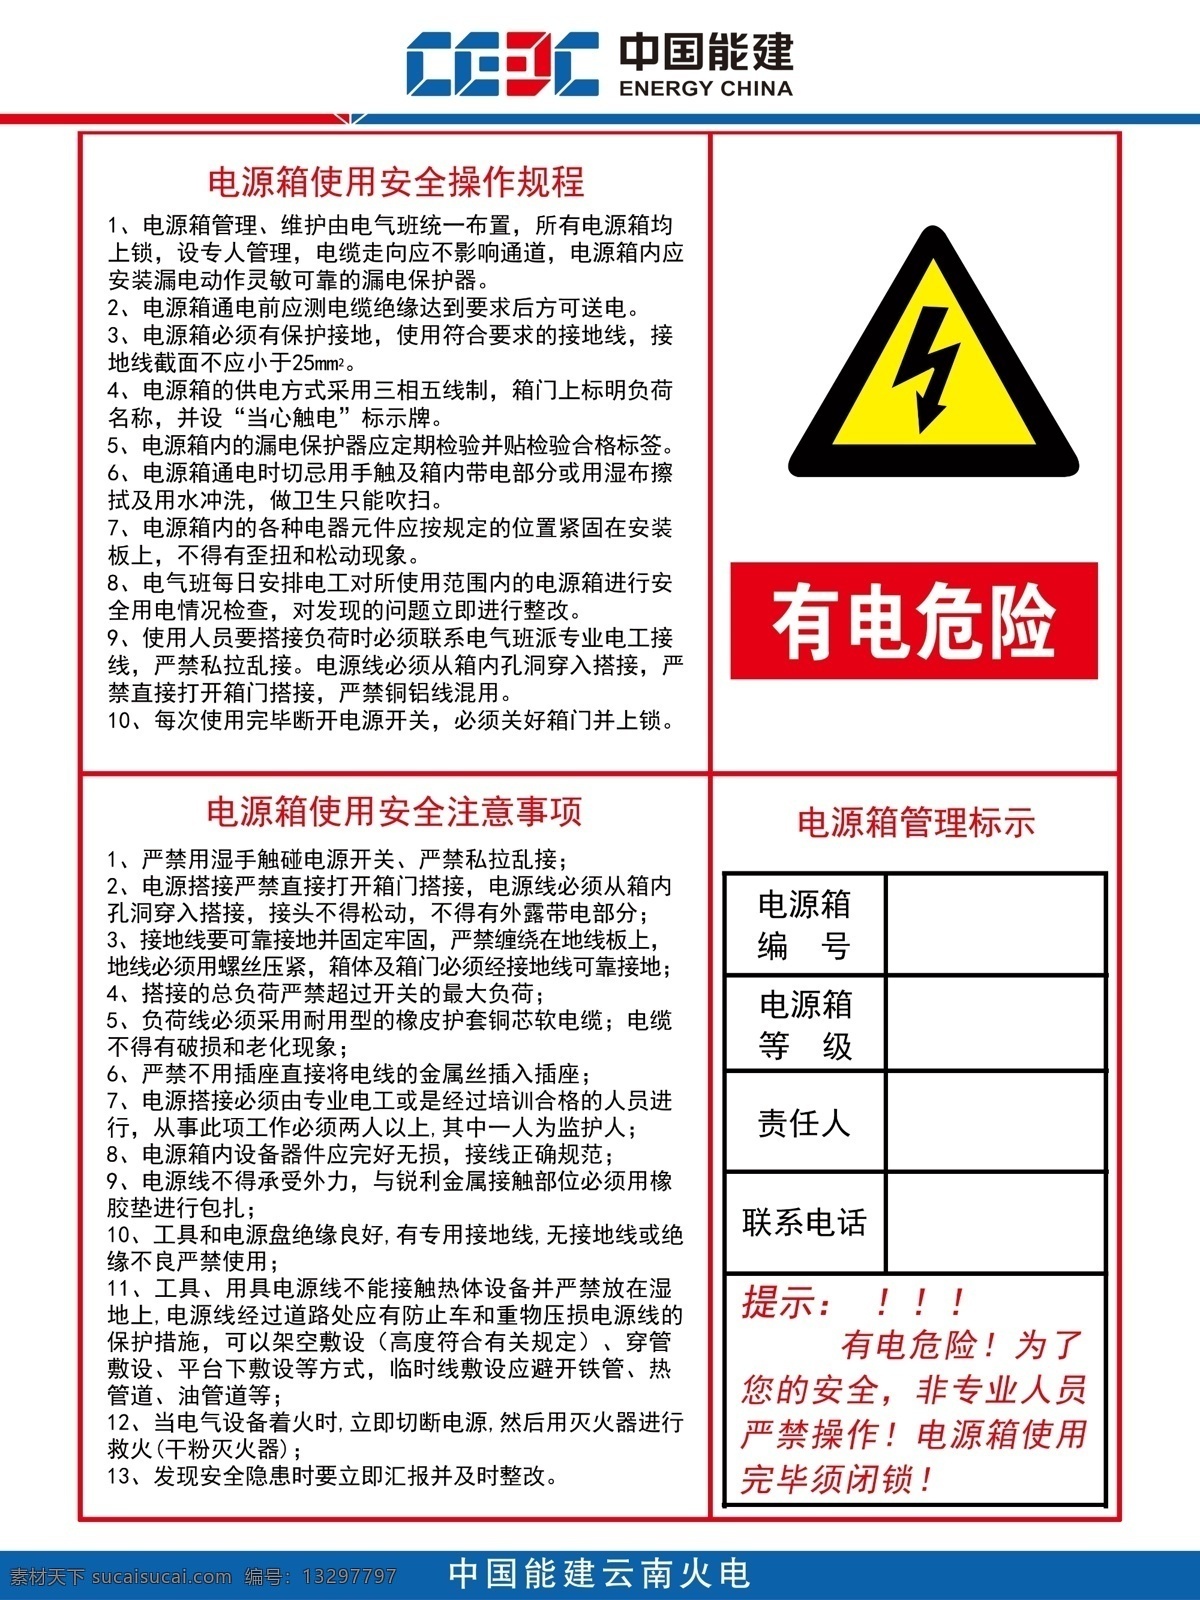 电源箱 使用 操作规程 管理标识 有电危险 中国能建 安全操作规程 火电 制度 海报 分层